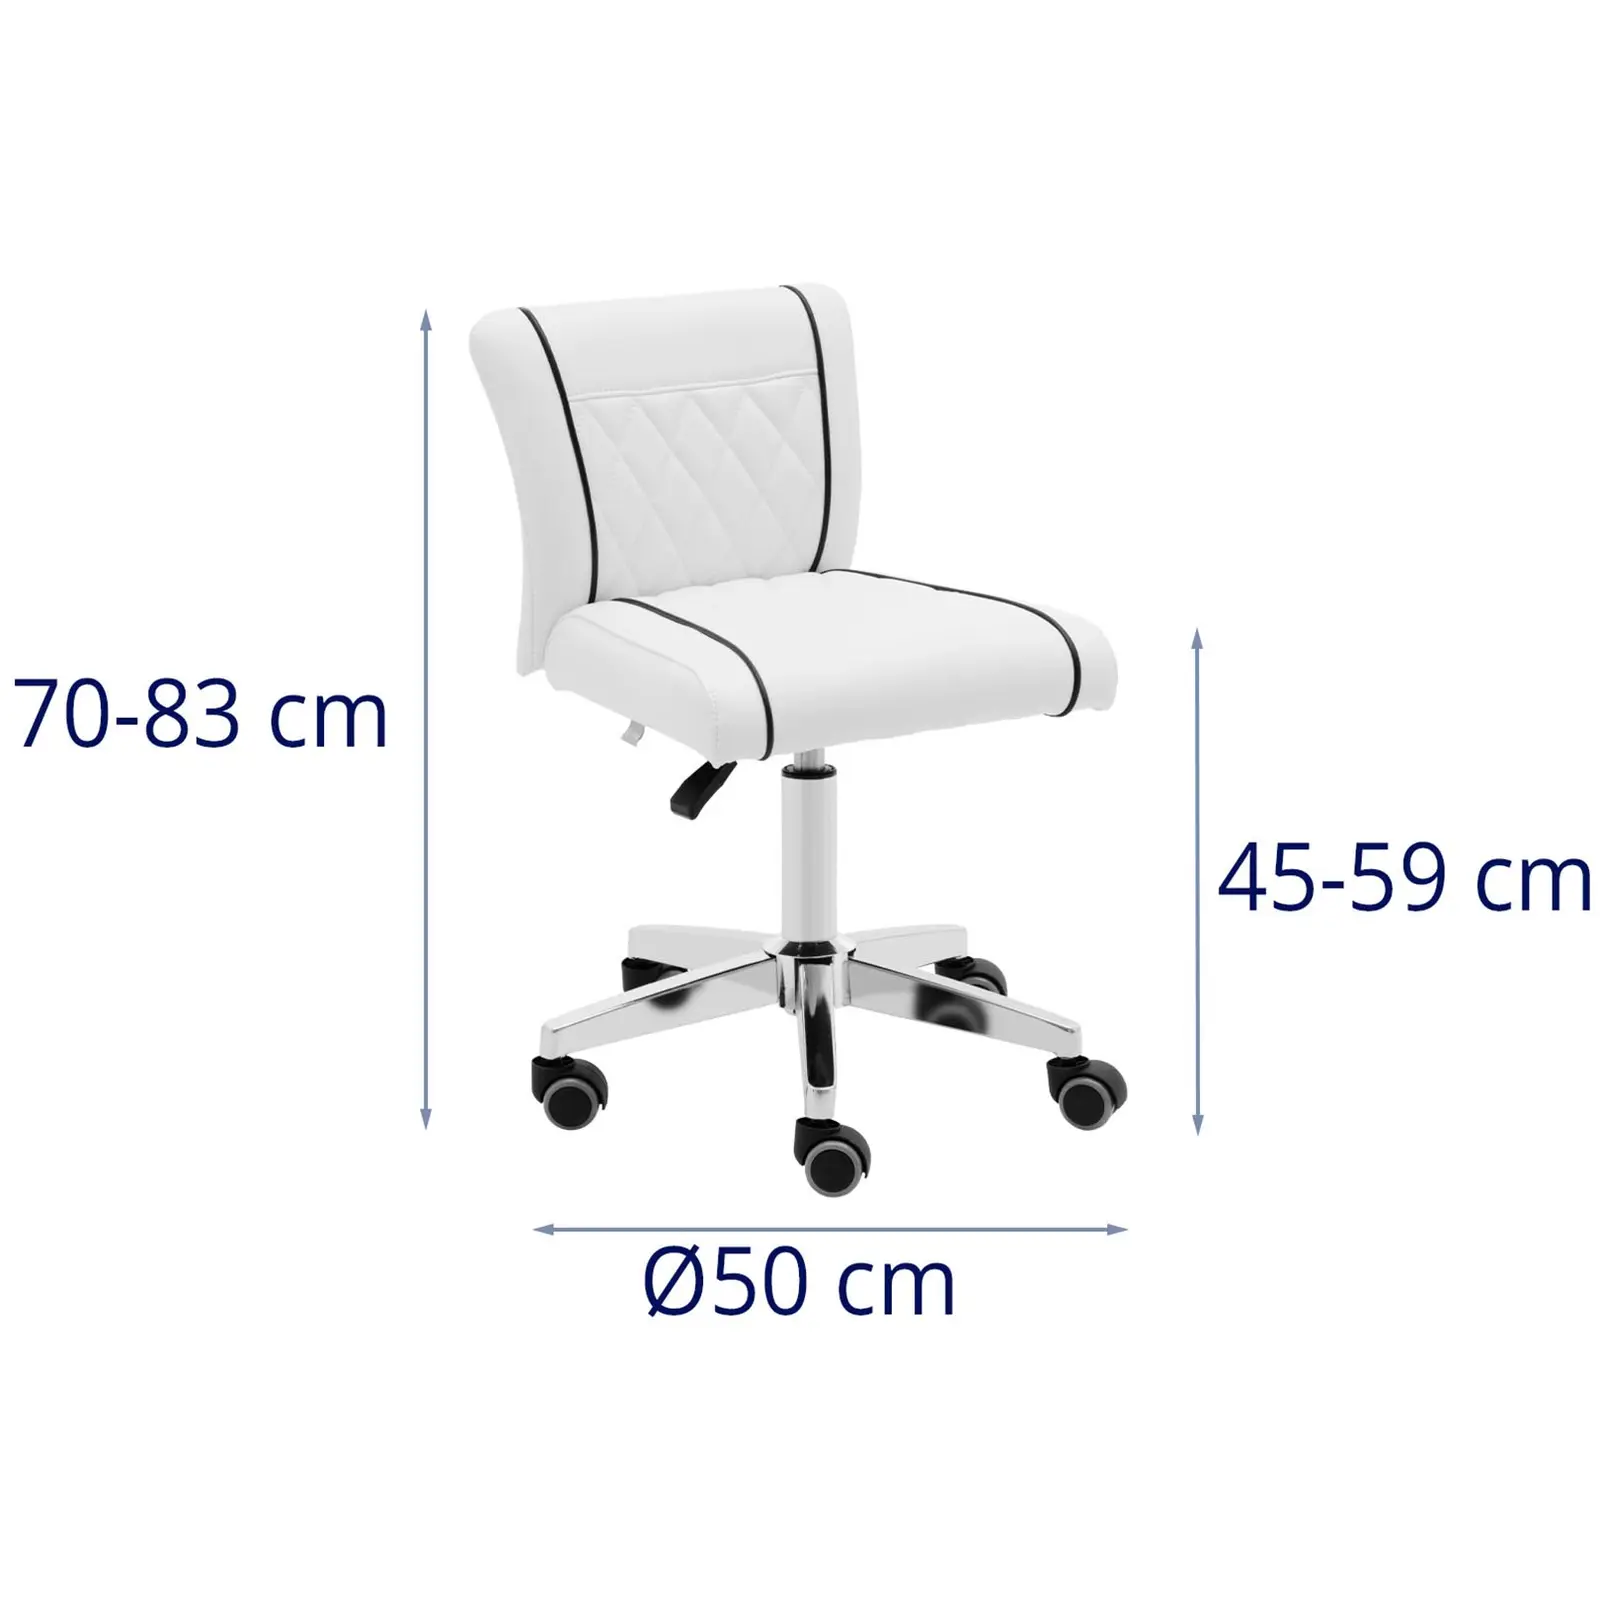 Arbejdsstol med hjul - 45 - 59 cm - 150 kg - hvid